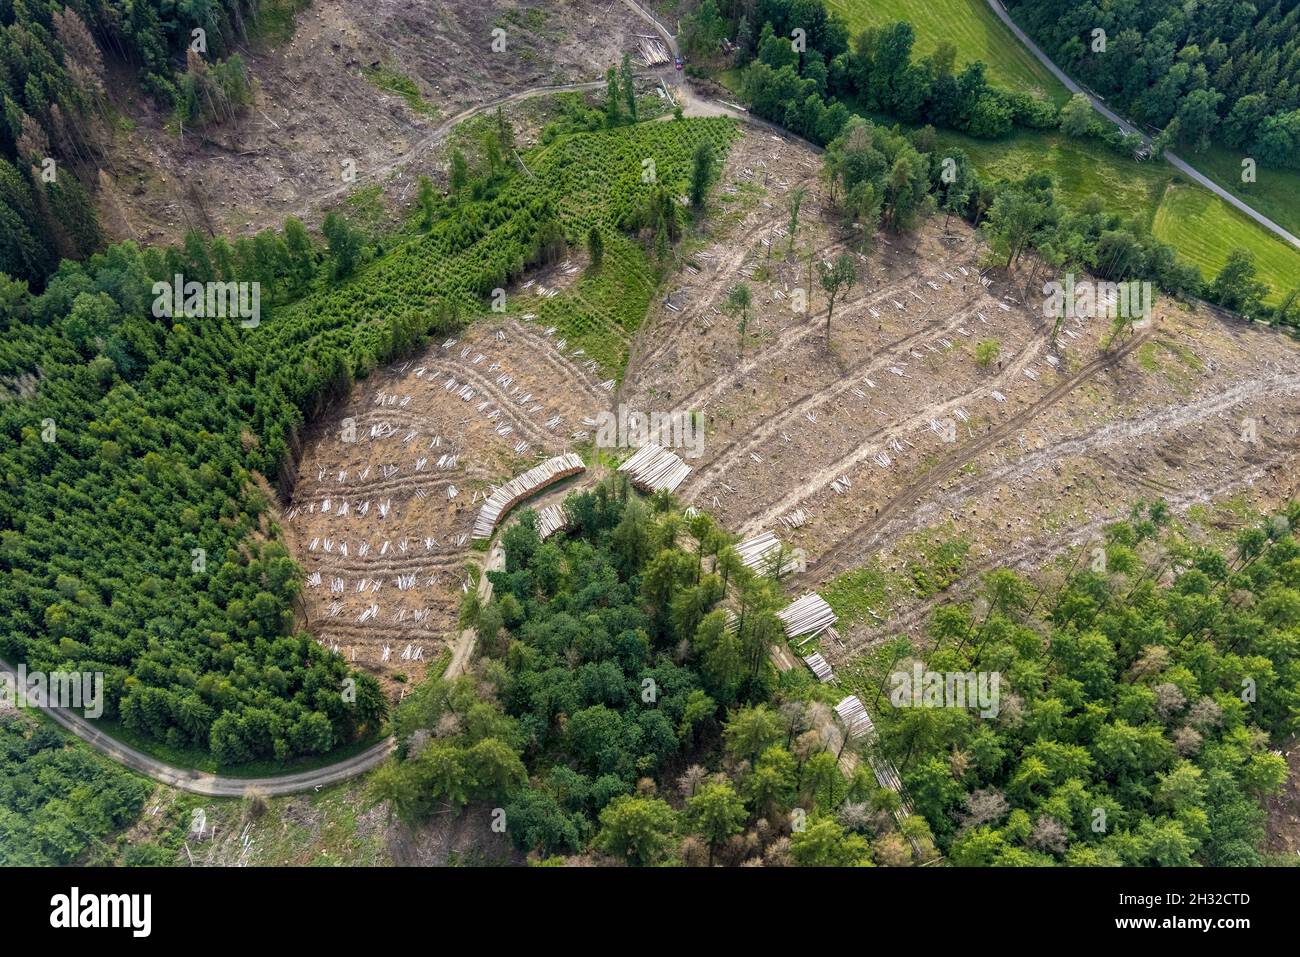 Fotografia aerea, zona forestale di Hünkesohl con danni alla foresta nei pressi di Wormberg, Drolshagen, Sauerland, Renania settentrionale-Vestfalia, Germania, albero morte, abbaia essere Foto Stock